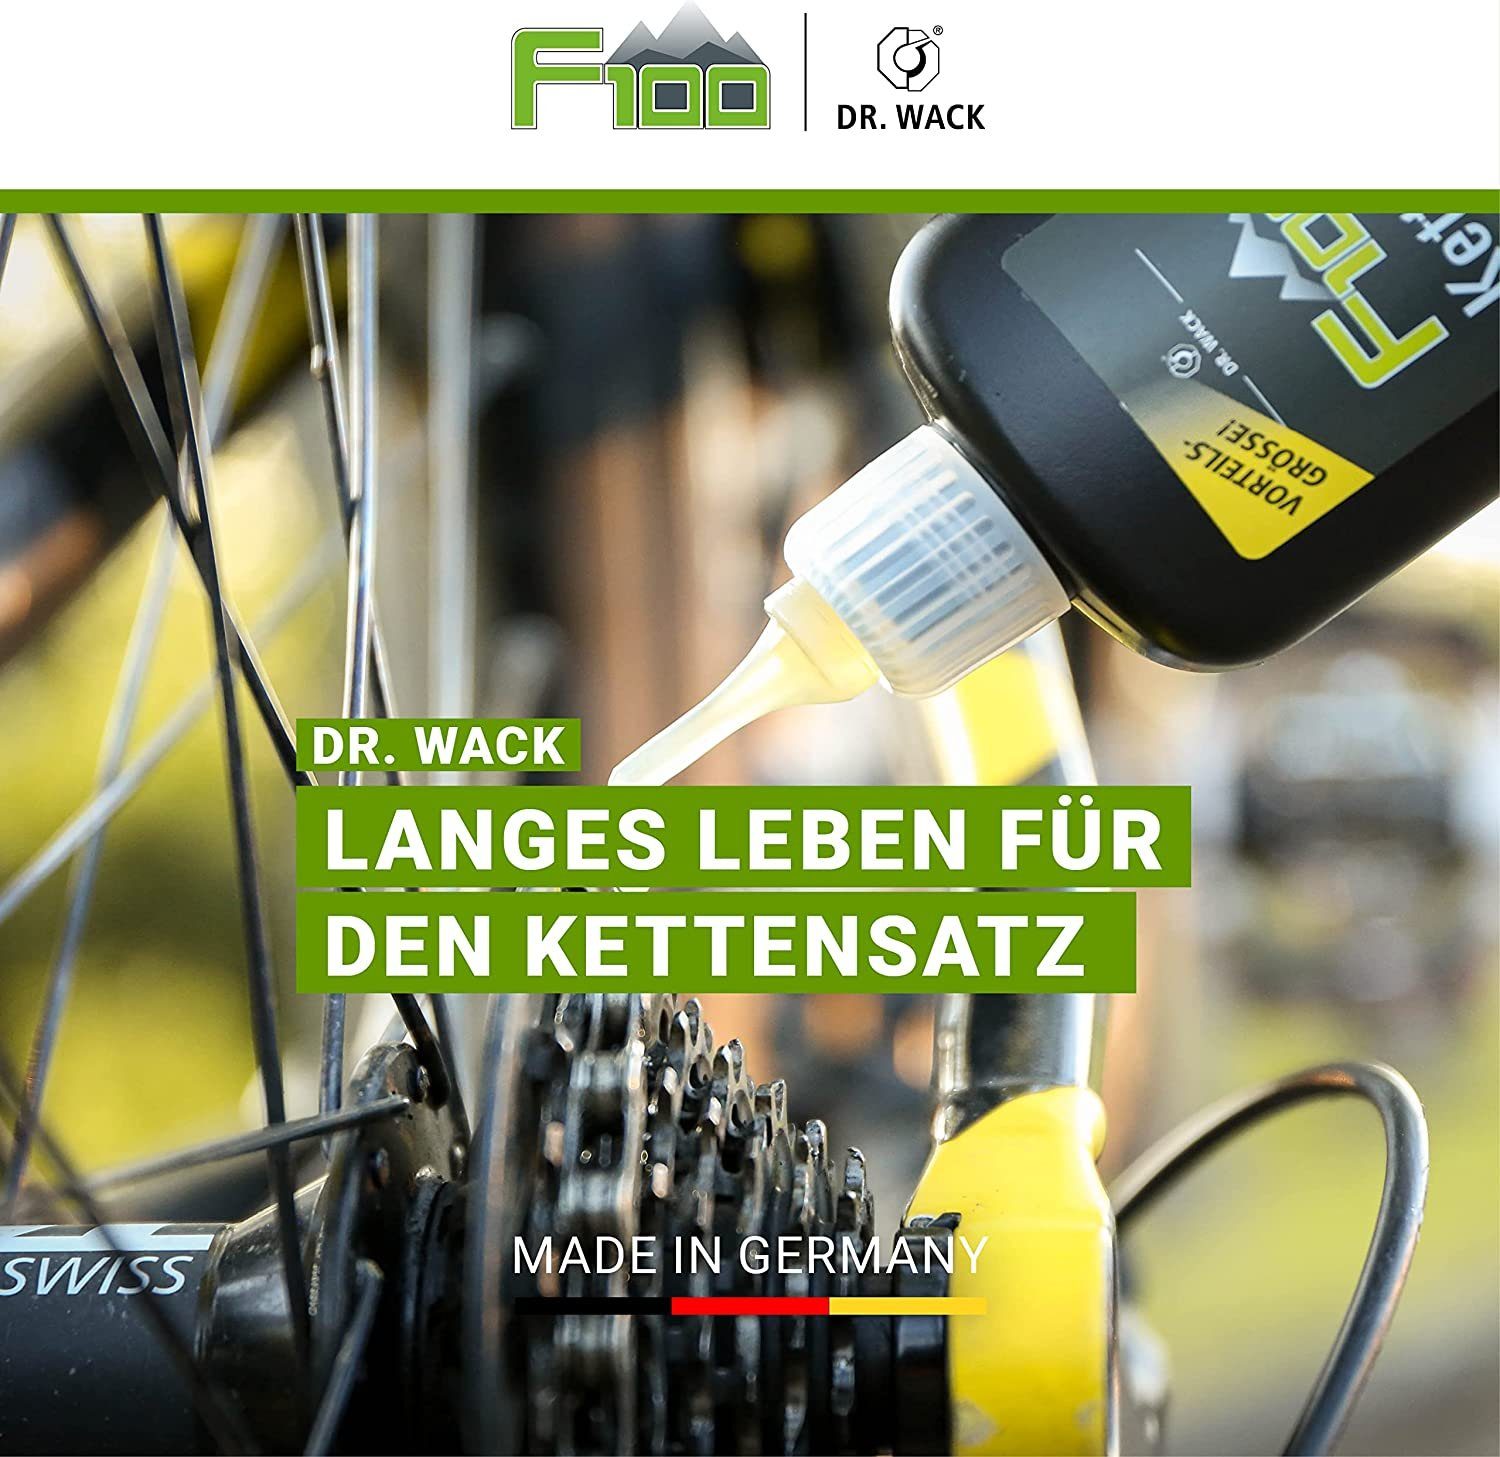 DR WACK Fahrrad-Montageständer Dr.Wack MTB Fahrrad F100 50ml Kettenöl Pflege Road Ebike